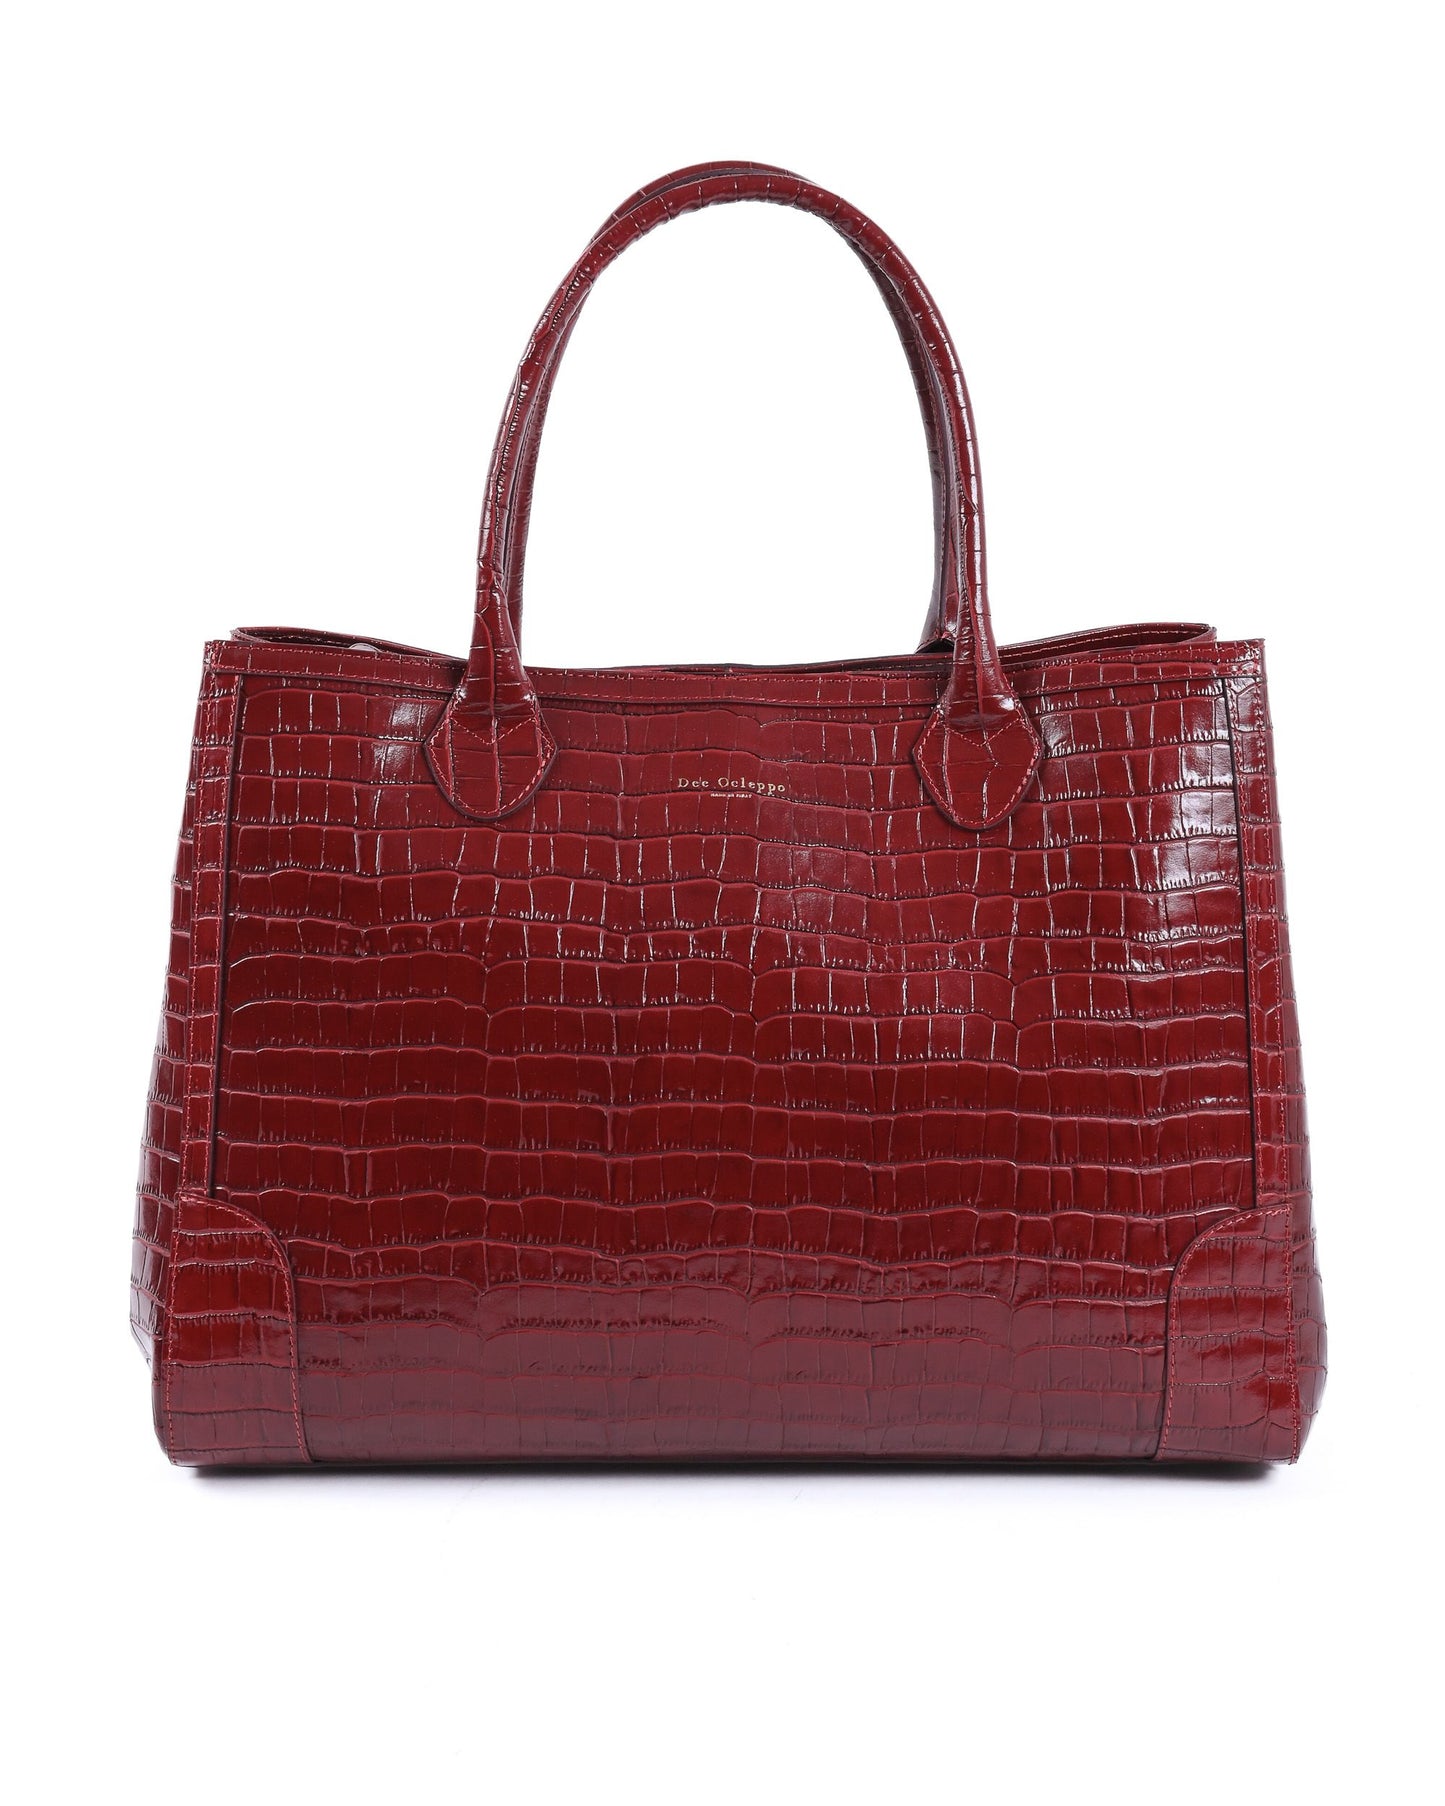 Dee Ocleppo Womens Handbag EXTER BORDEAUX